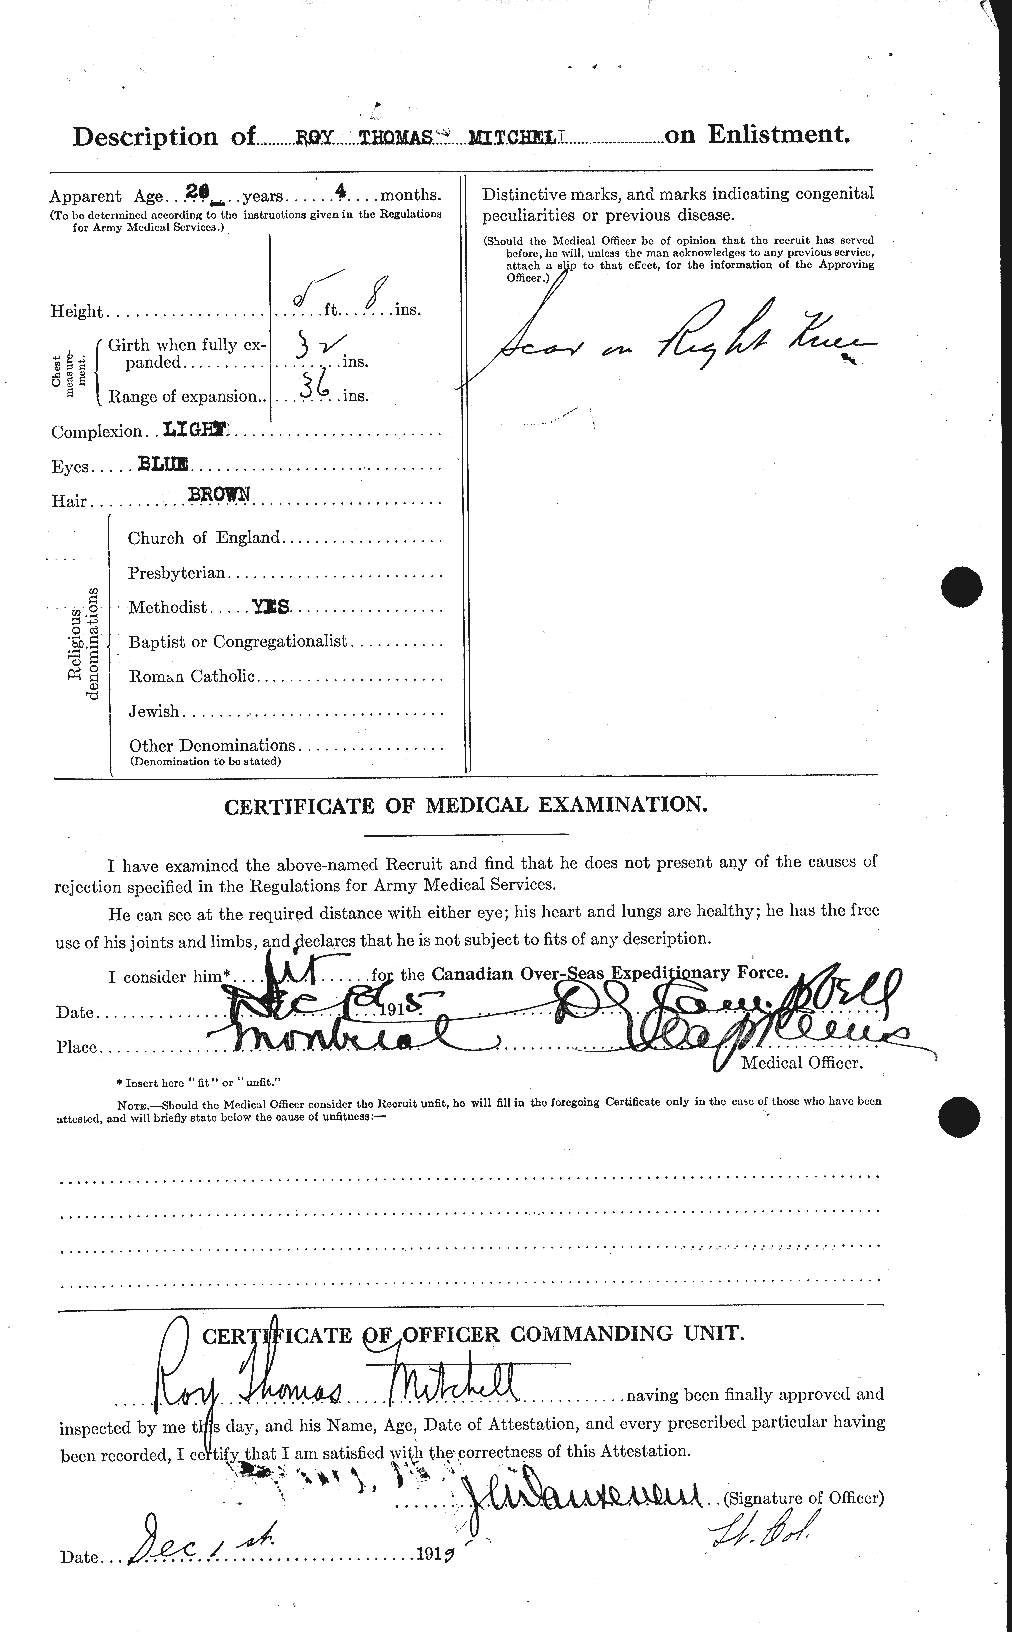 Dossiers du Personnel de la Première Guerre mondiale - CEC 499885b